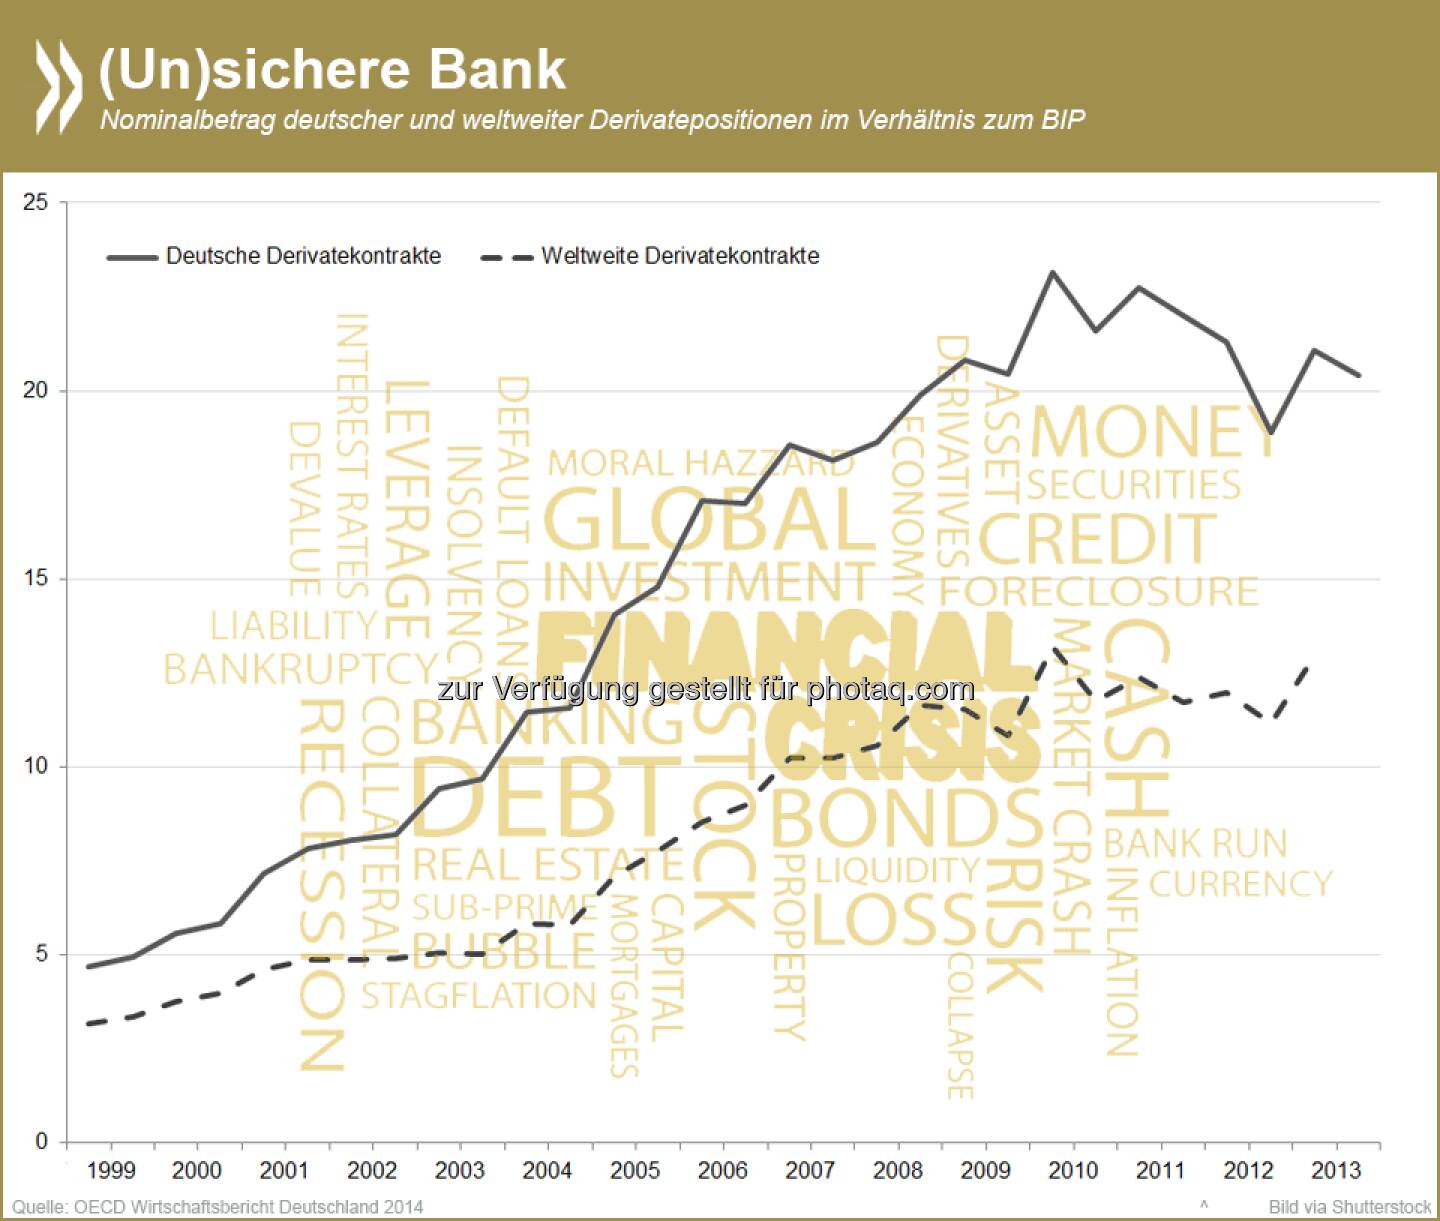 Eine (un)sichere Bank? Die Derivatepositionen deutscher Banken sind im Jahrzehnt vor der Finanzkrise im Verhältnis zum BIP um das Fünffache gestiegen und liegen über dem weltweiten Durchschnitt. Große Mengen an Derivaten begünstigen sogenannte systemische Risiken und schwächen die Finanzstabilität.

Mehr Informationen zu diesem Thema unter:  http://bit.ly/1kXmUFZ (S.61)  Source: http://twitter.com/oecdstatistik